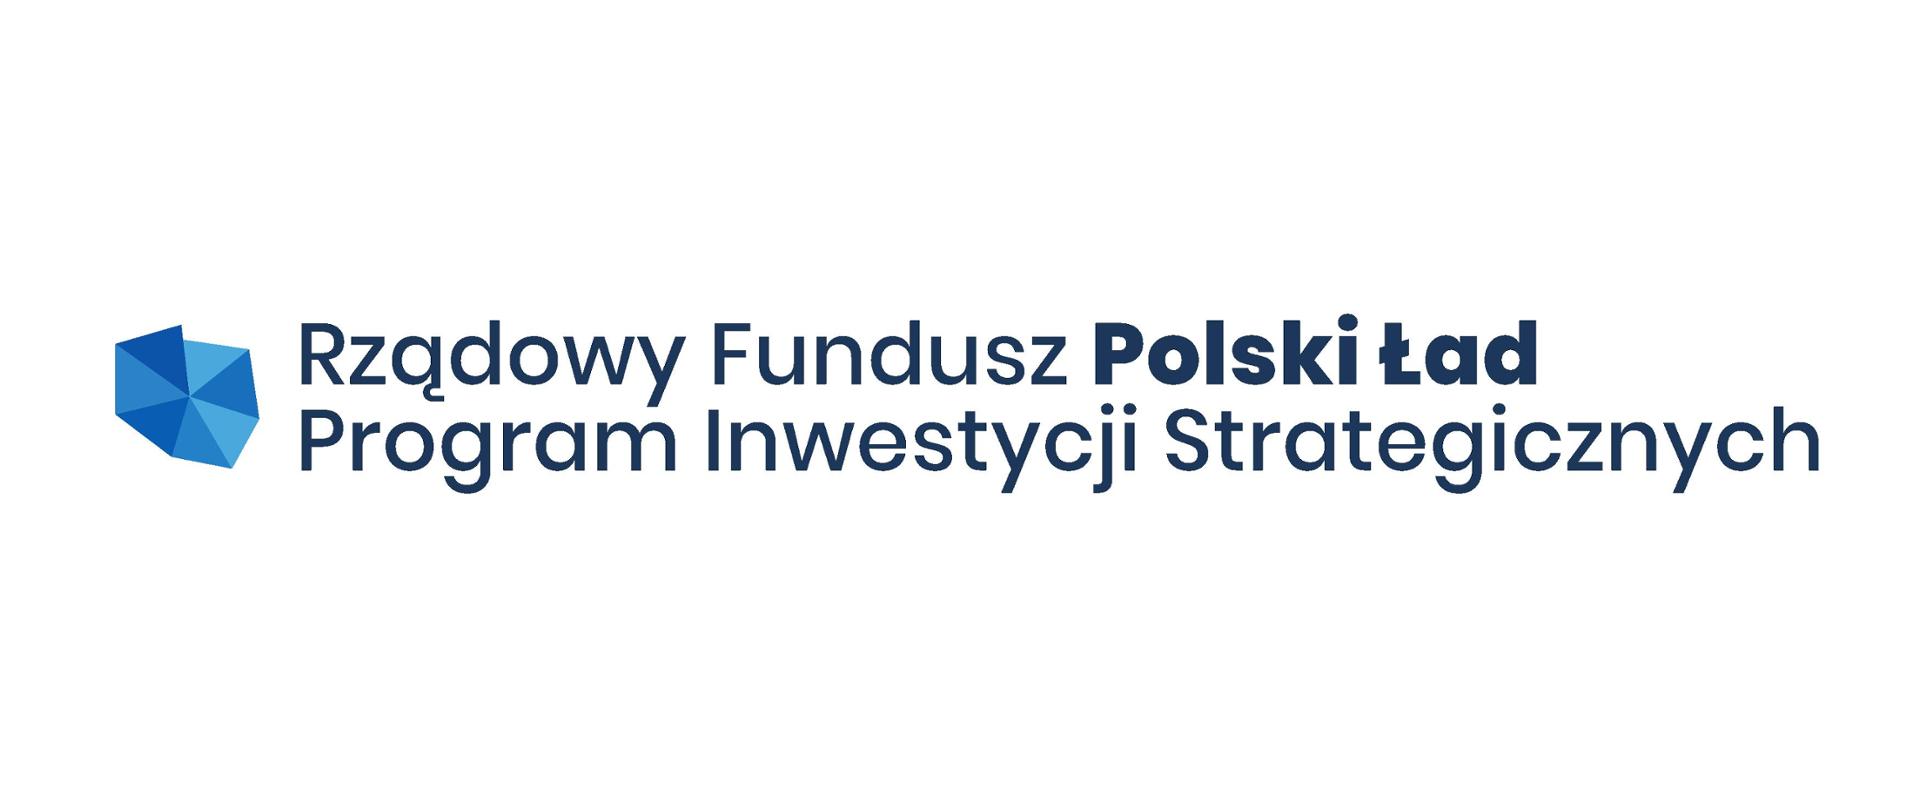 Polski ład - logo